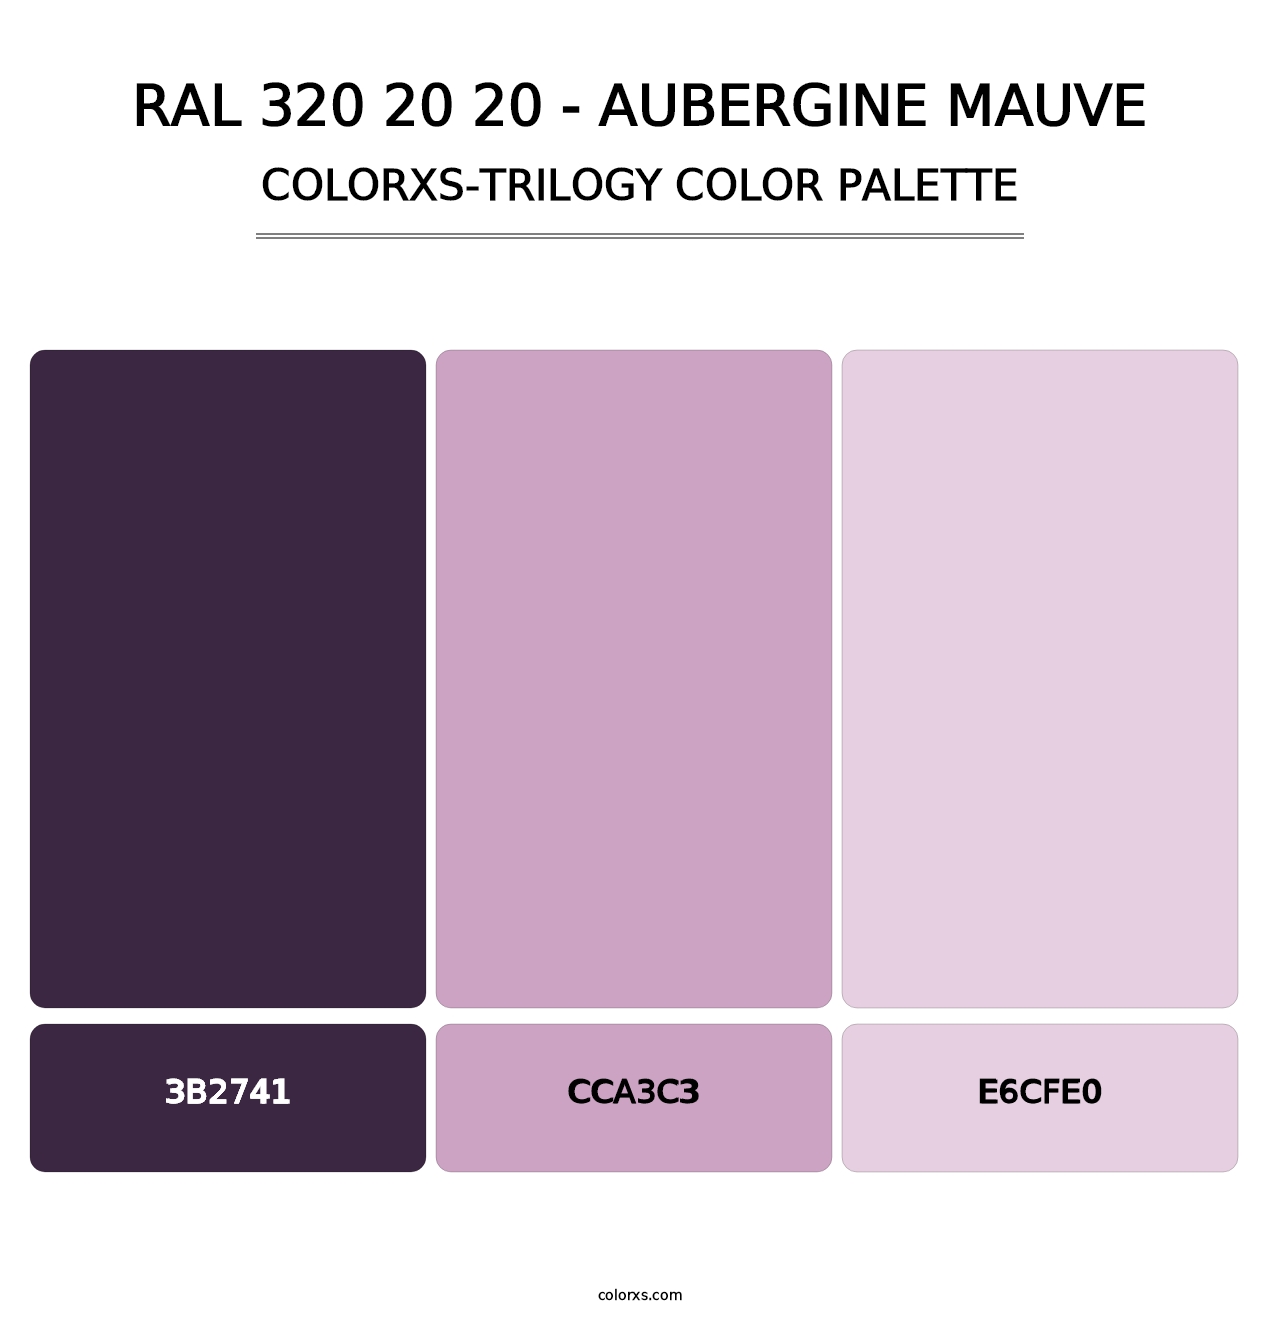 RAL 320 20 20 - Aubergine Mauve - Colorxs Trilogy Palette